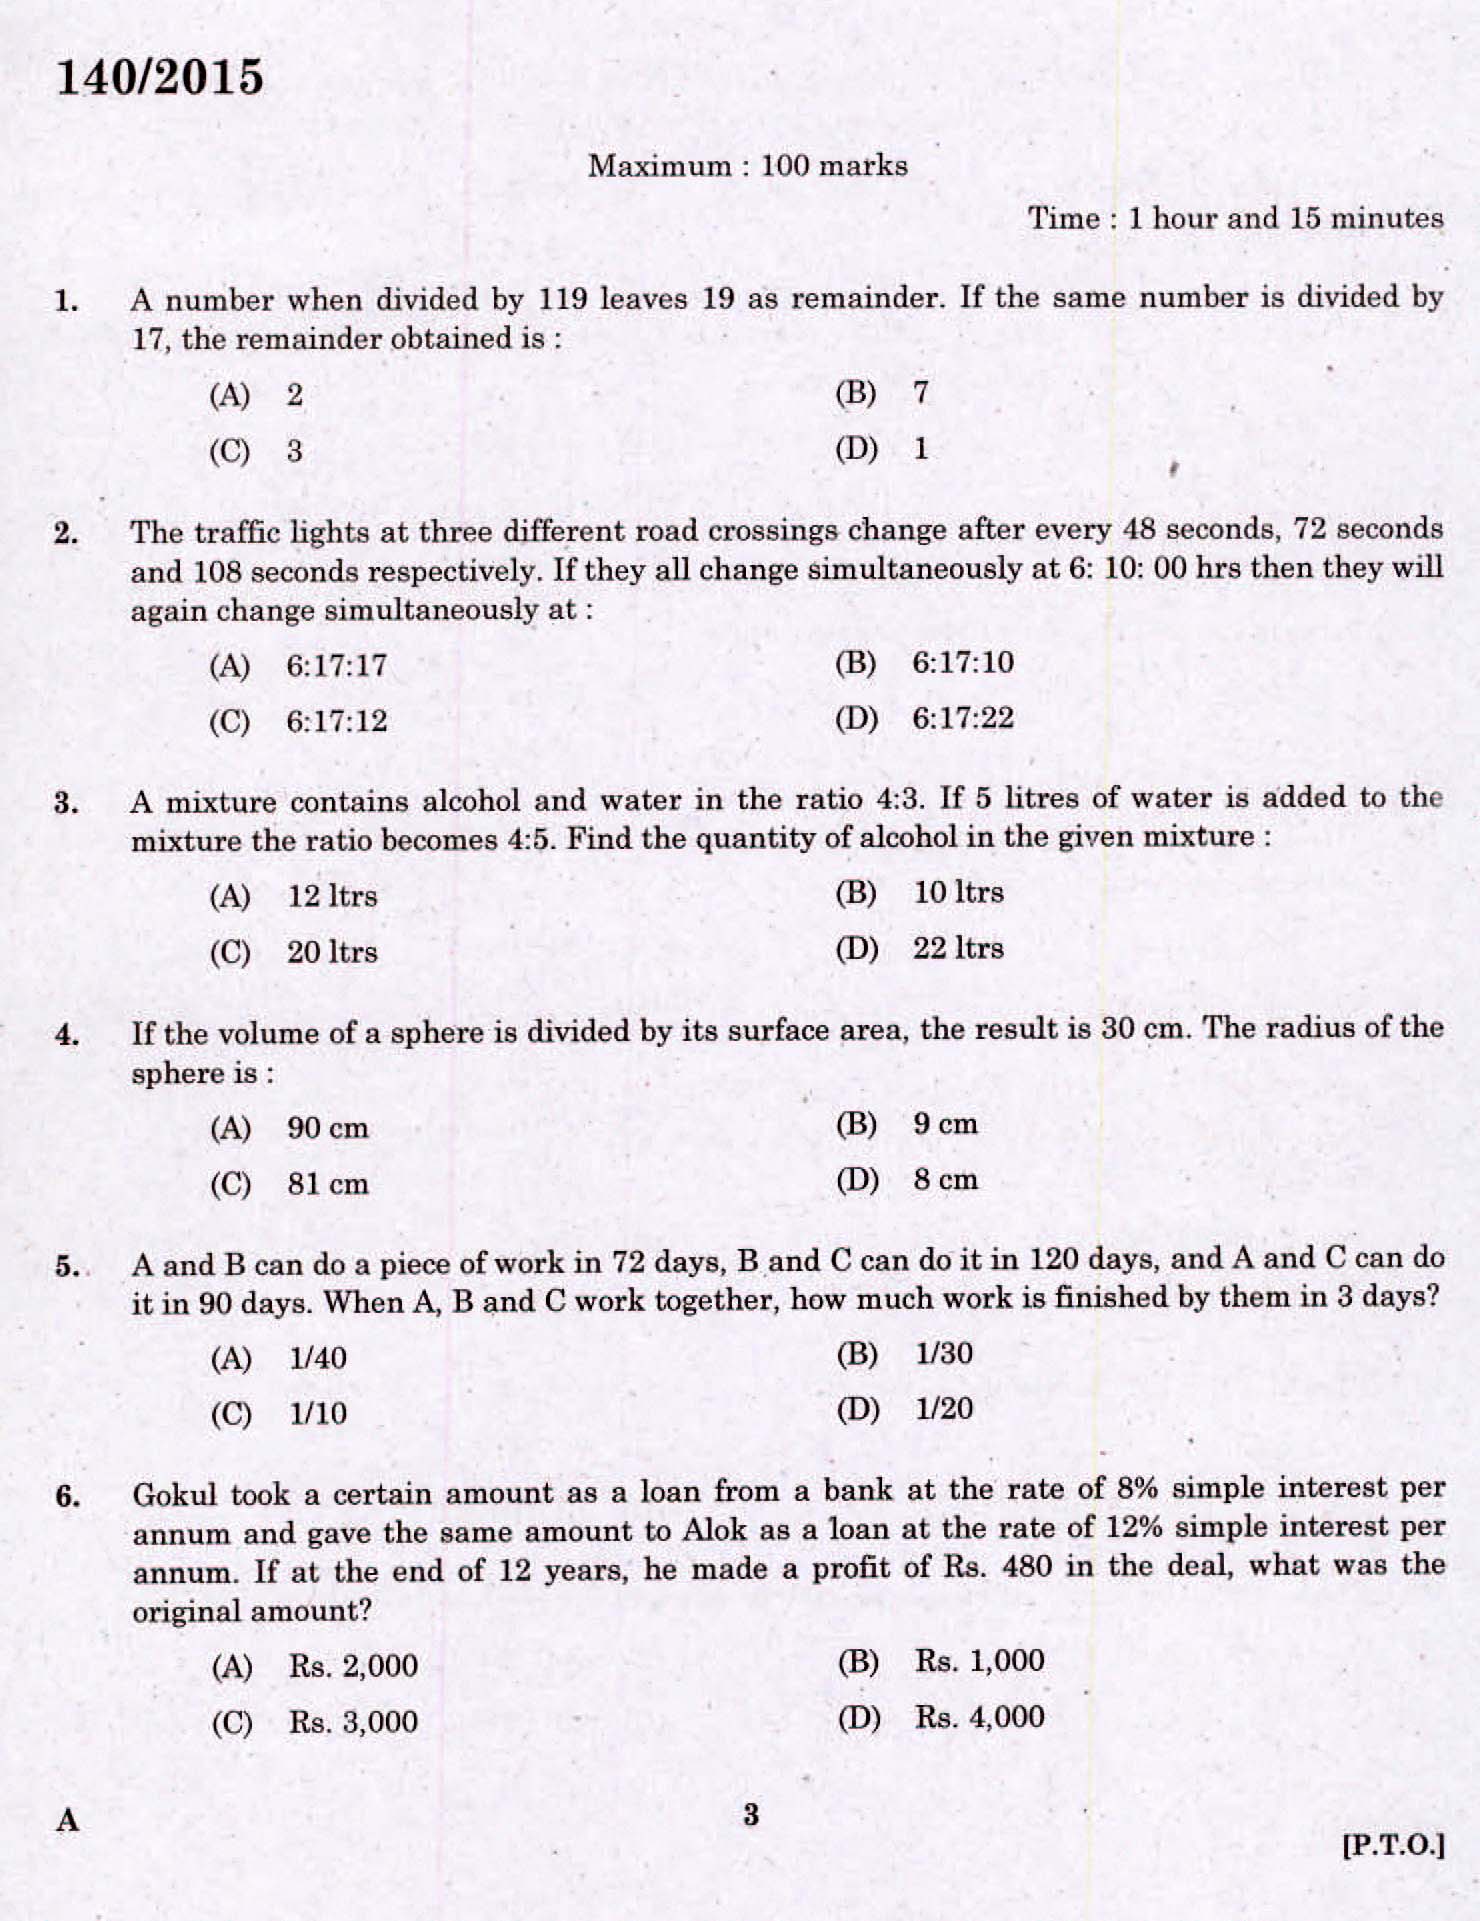 Kerala PSC Assistant Grade II Exam 2015 Question Paper Code 1402015 1